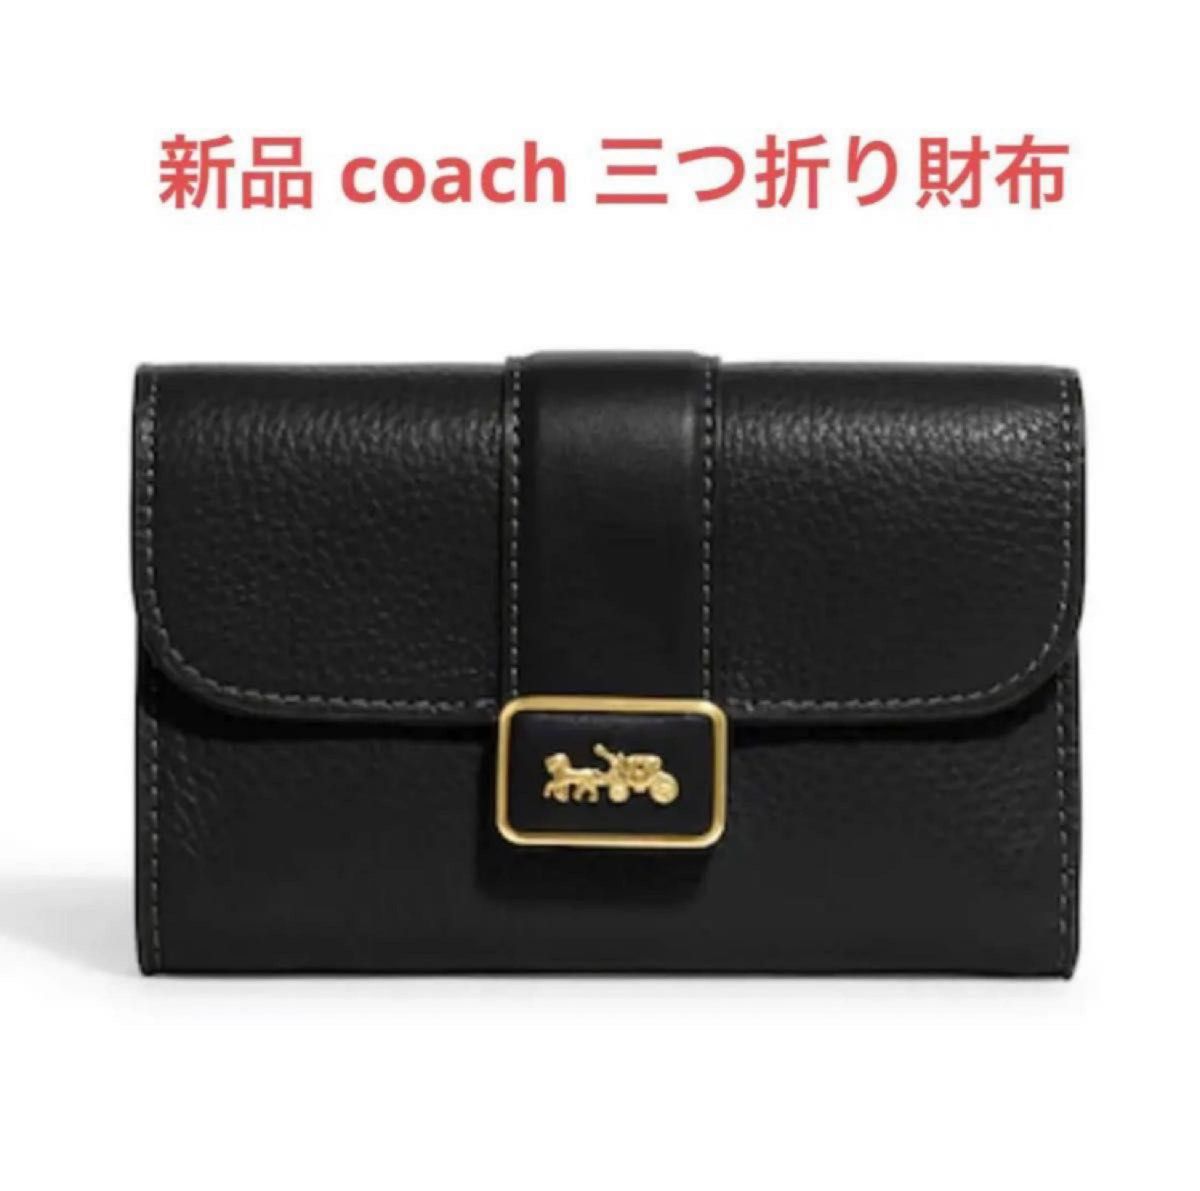 【新品・未使用】コーチ ミディアム グレース ウォレット レザー 三つ折り財布